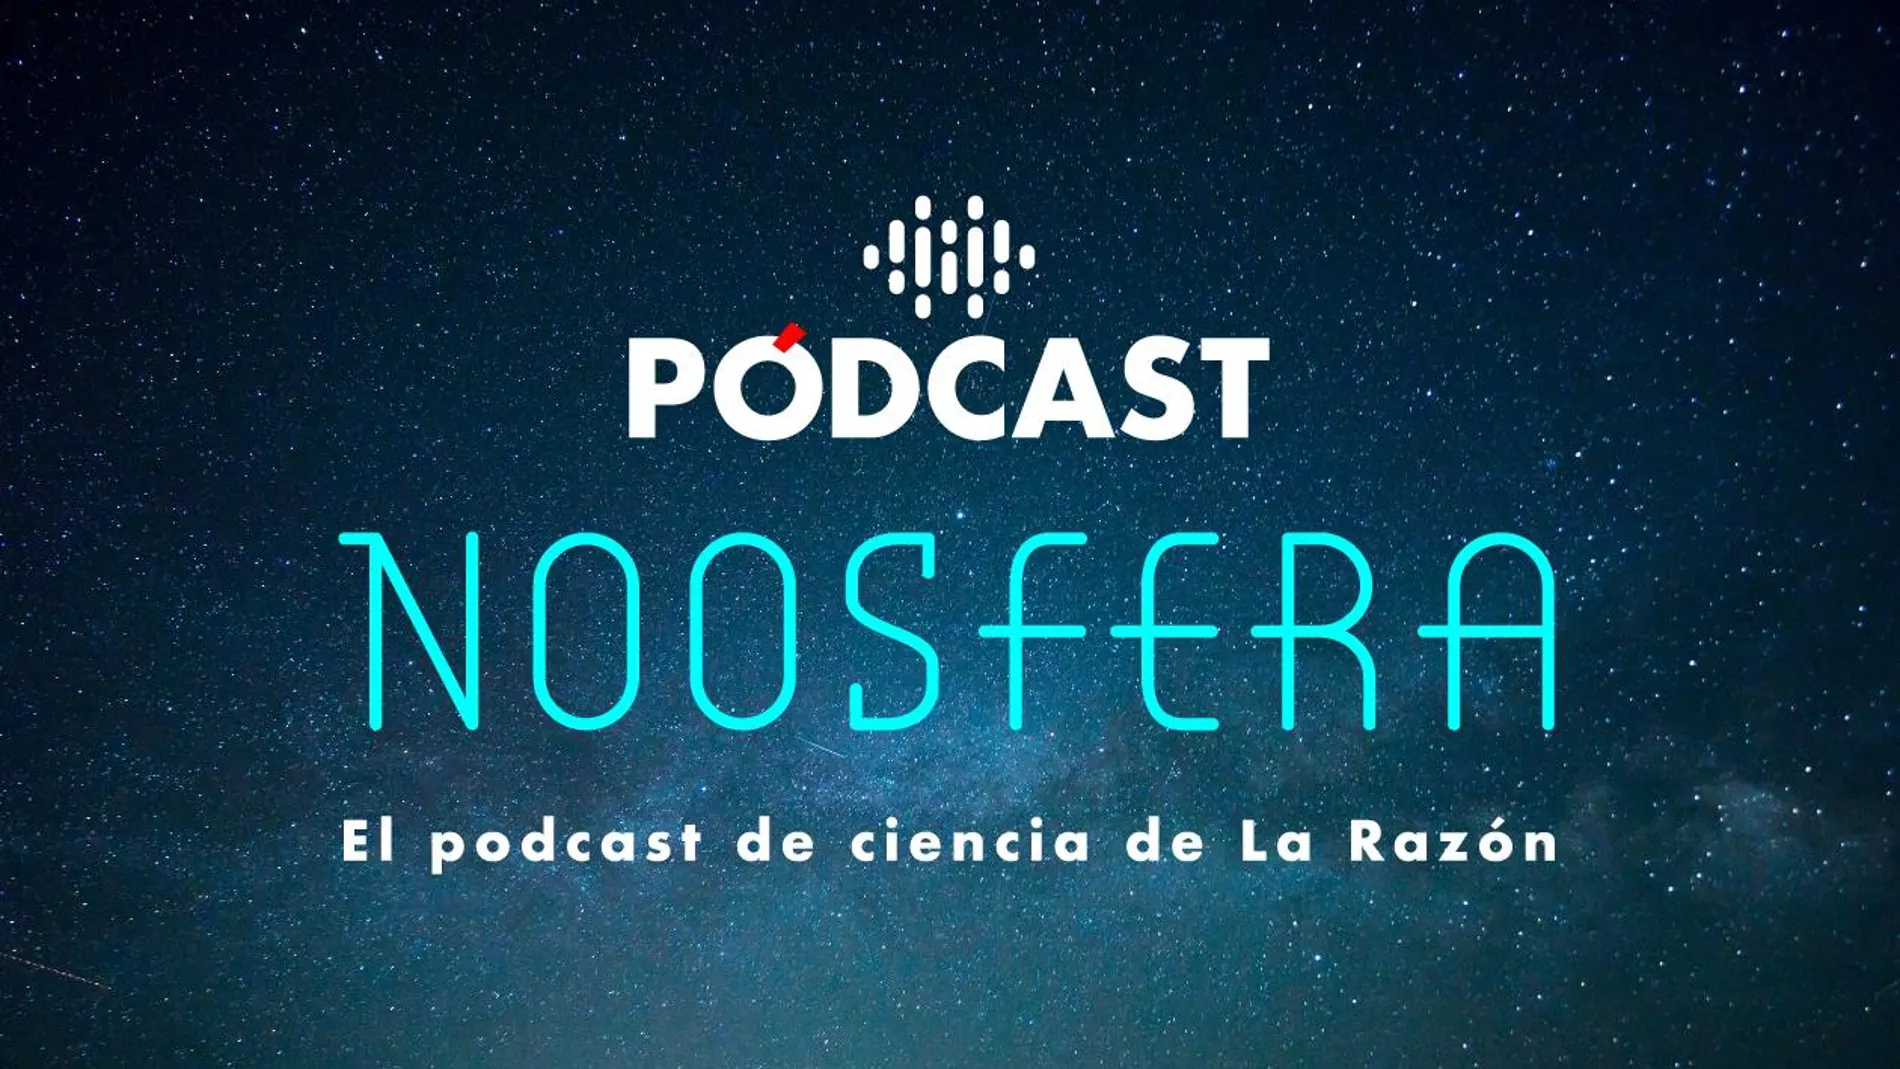 Noosfera: el podcast de ciencia de la Razón presentado por Ignacio Crespo.